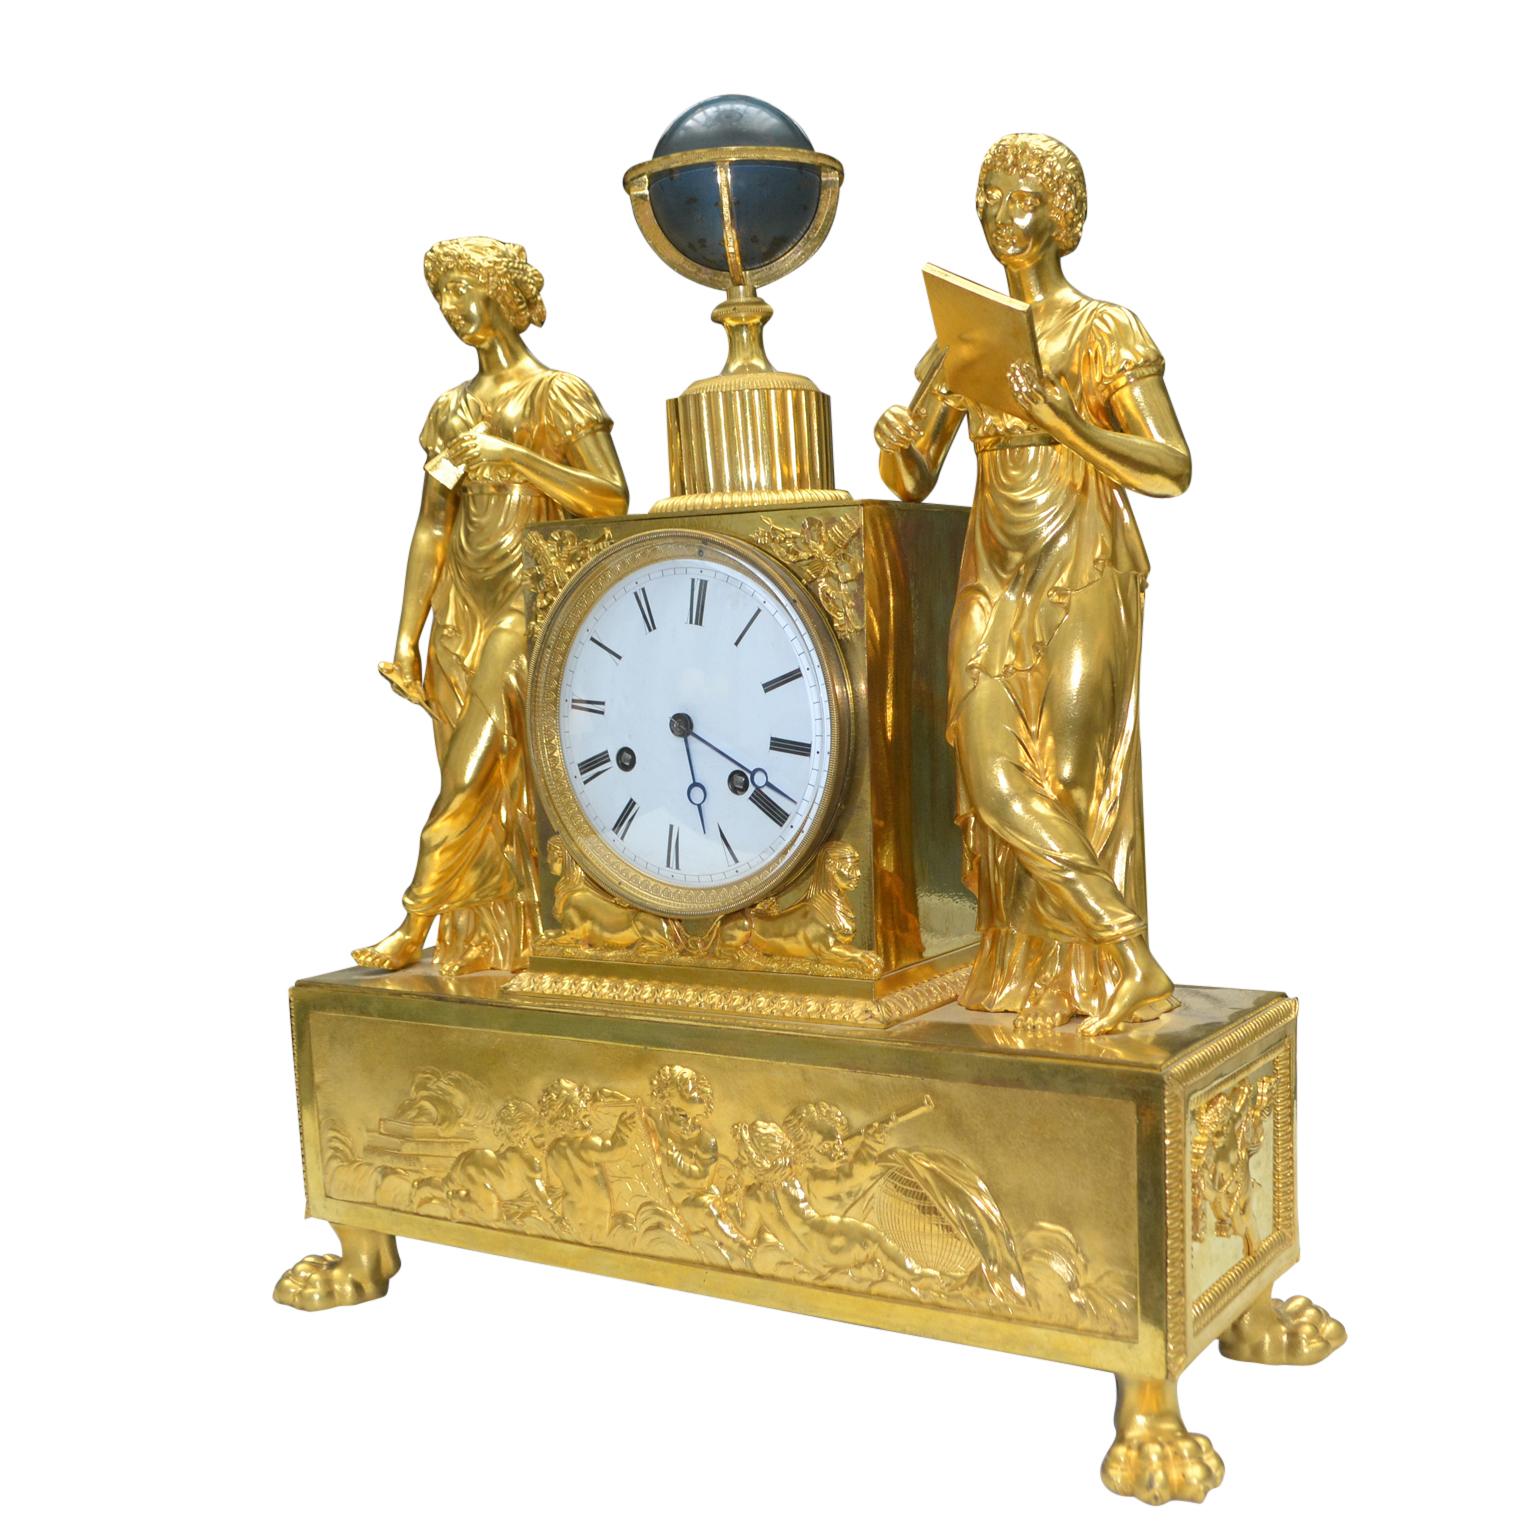 Belle pendule Empire en bronze doré du début du XIXe siècle représentant une allégorie de l'astronomie. Deux jeunes filles aux drapés classiques se tiennent de part et d'autre d'un piédestal contenant le mouvement de la pendule, qui est surmonté